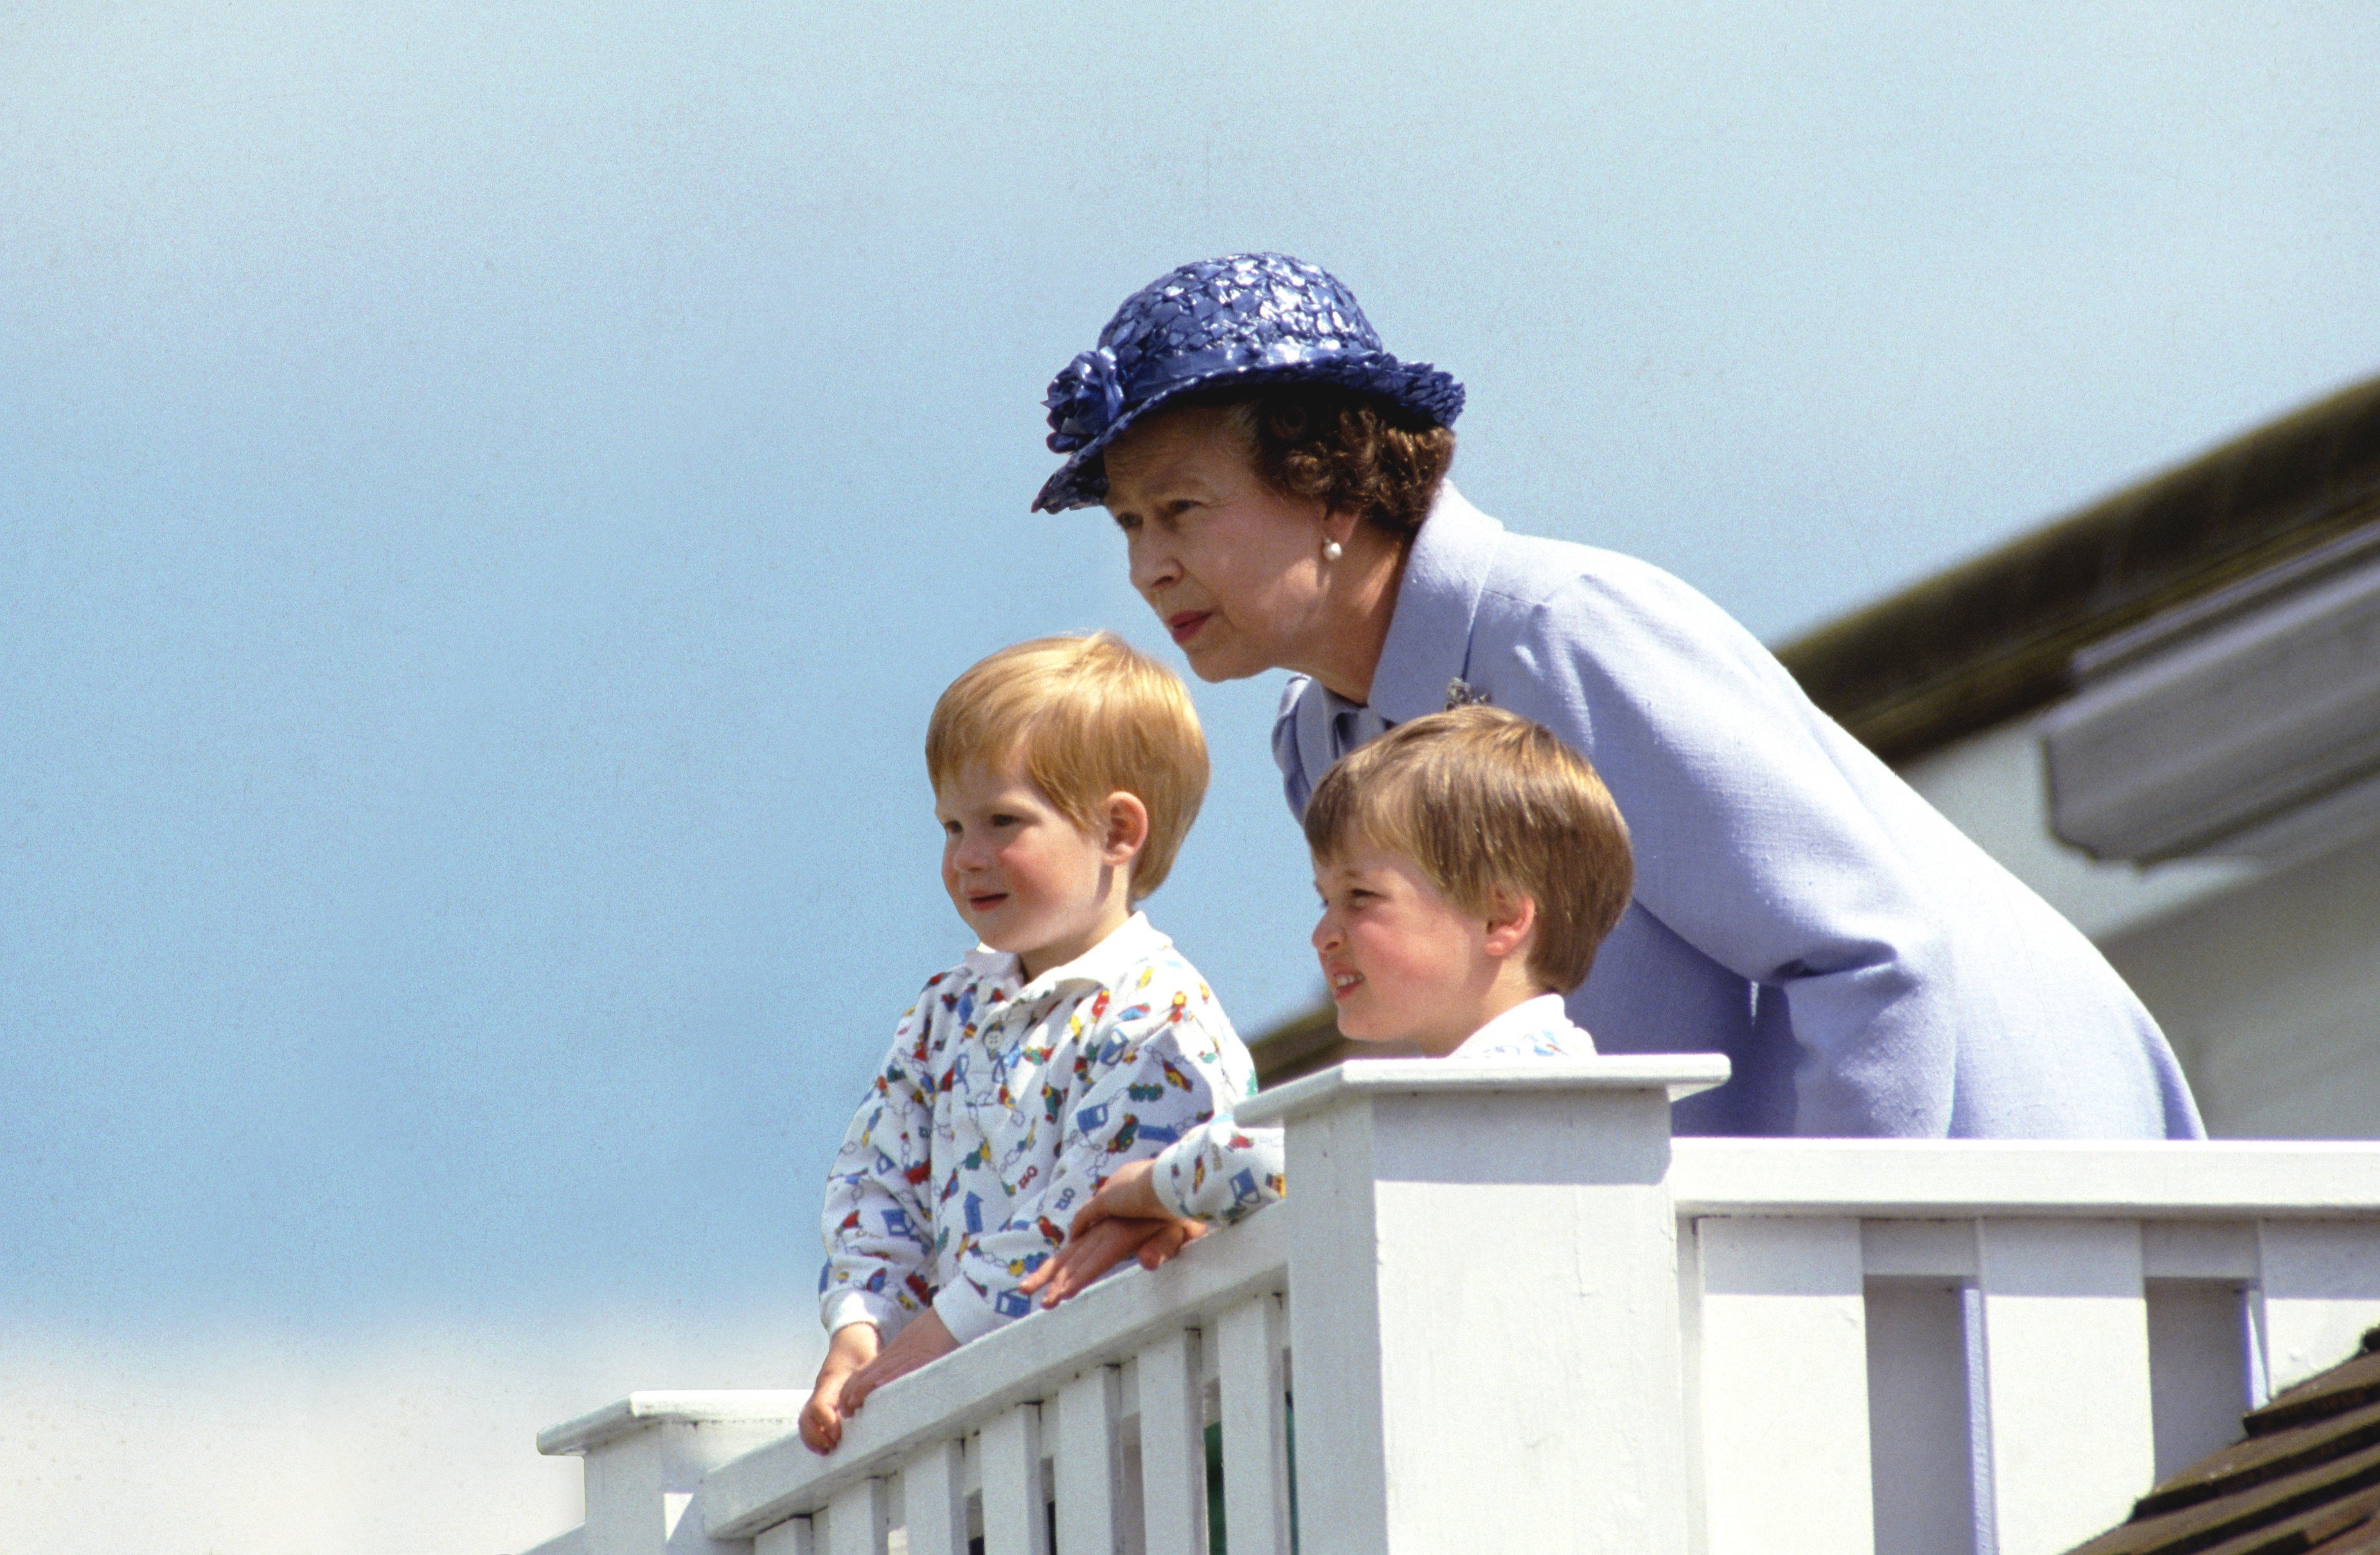 La reina Elizabeth II con sus nietos, el príncipe William y el príncipe Harry, en The Royal Box en Guards Polo Club, Smiths Lawn, Windsor, Reino Unido | Foto: Getty Images